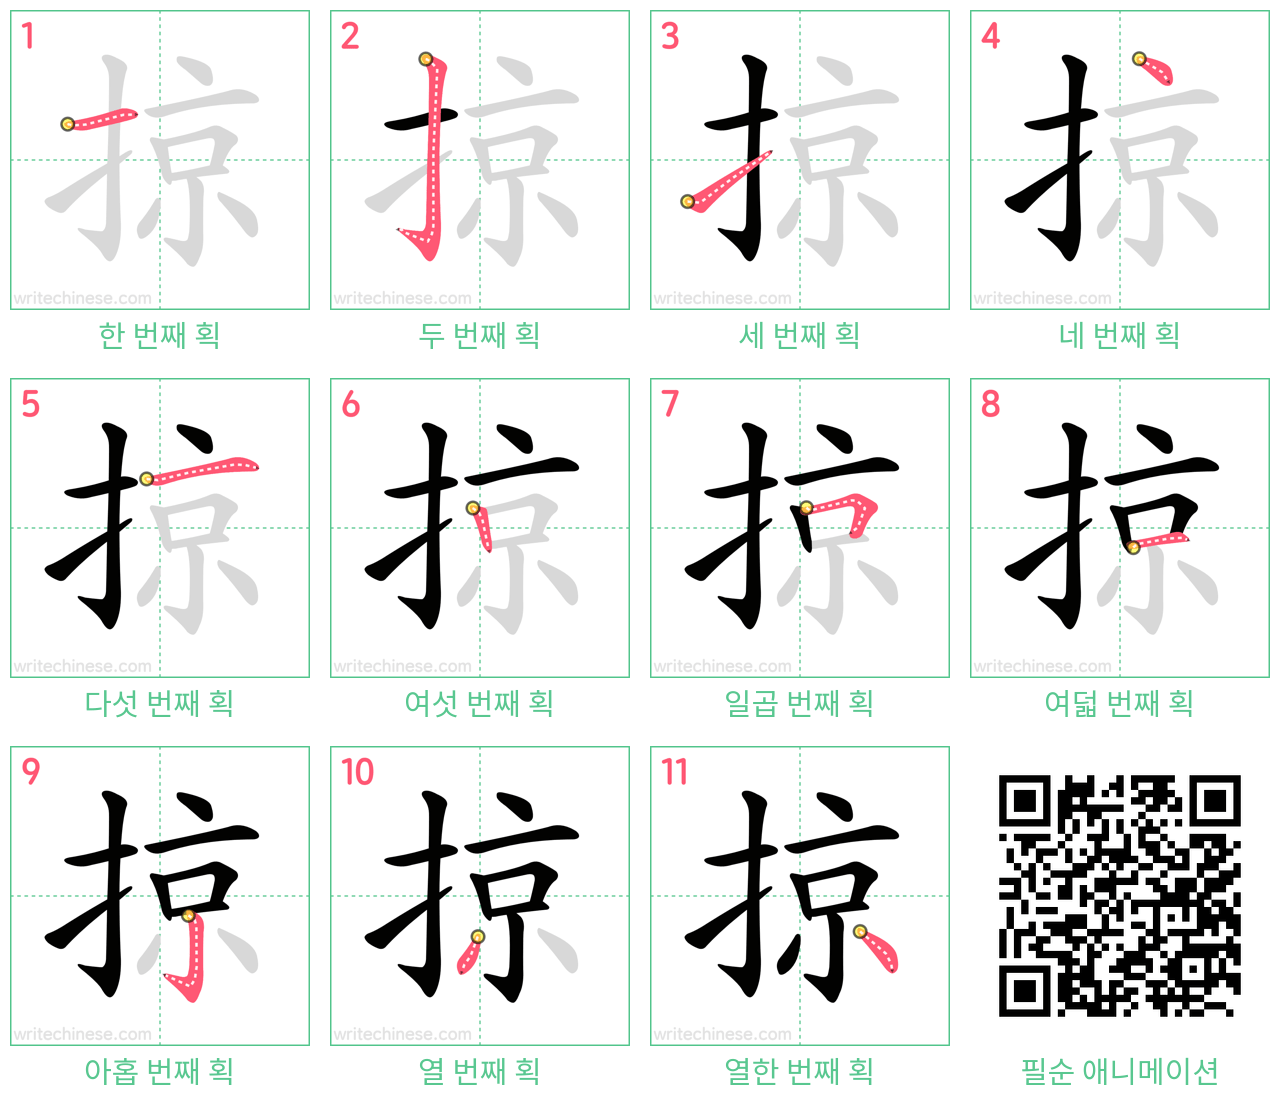 掠 step-by-step stroke order diagrams